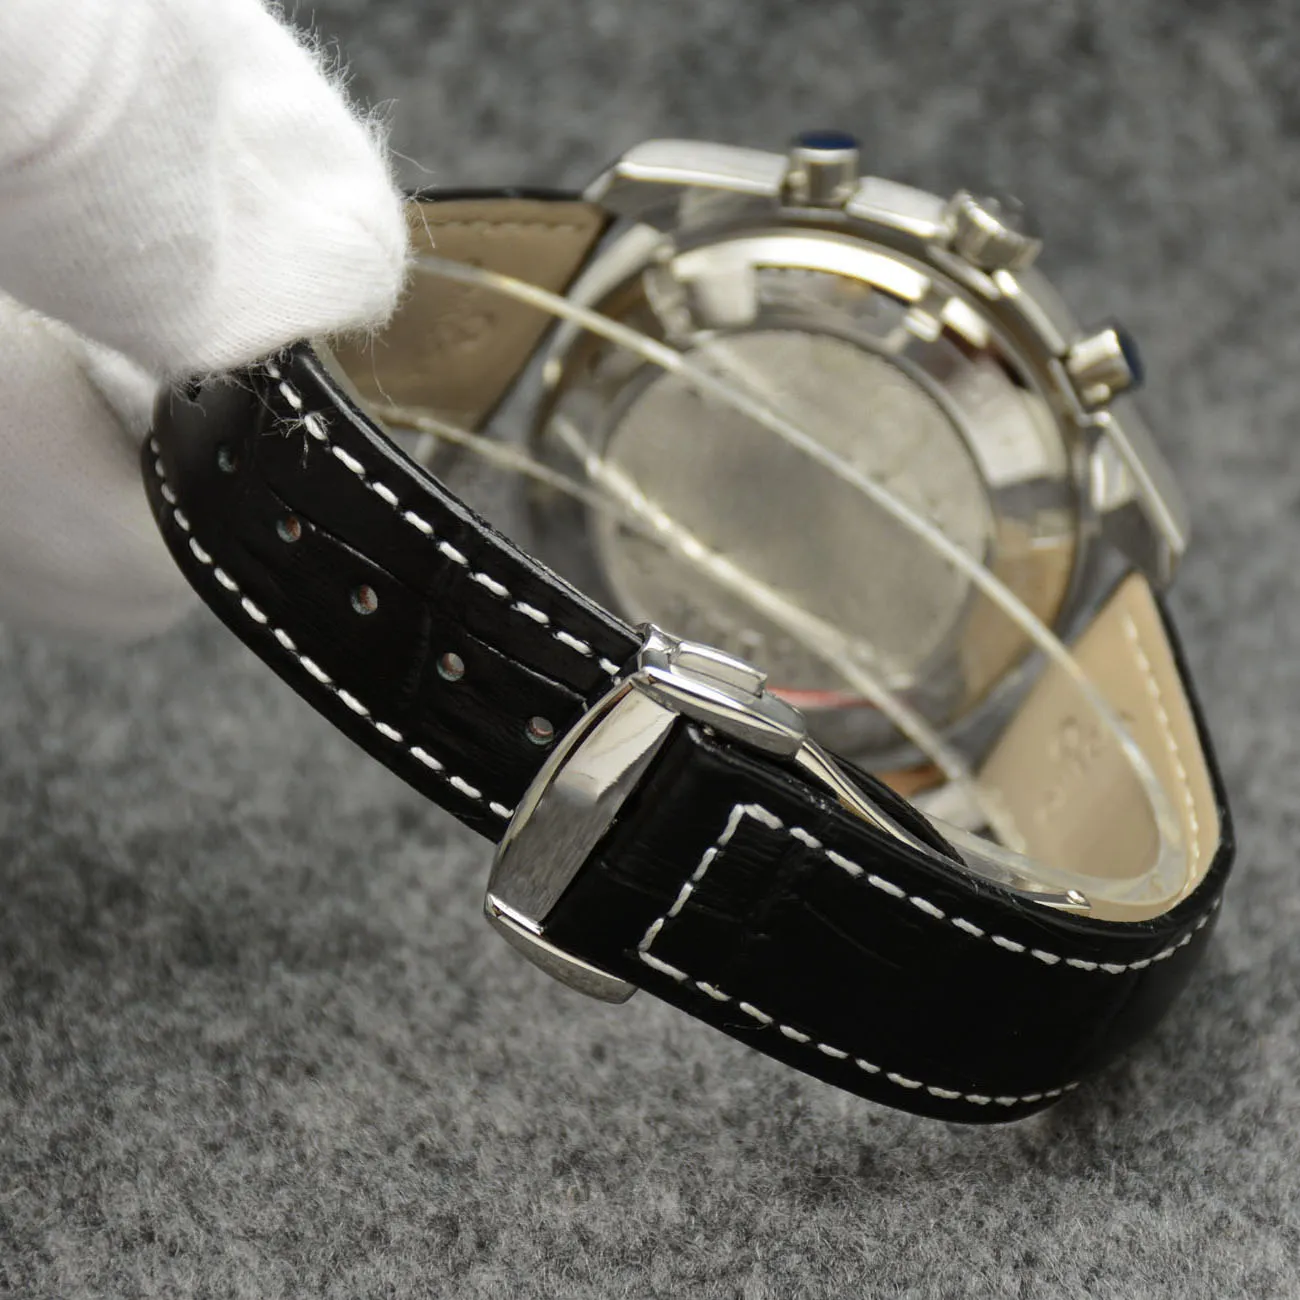 44mm quartzo cronógrafo data relógios masculinos mãos vermelhas pulseira de couro preto moldura fixa com um anel superior mostrando marcações de taquímetro275n